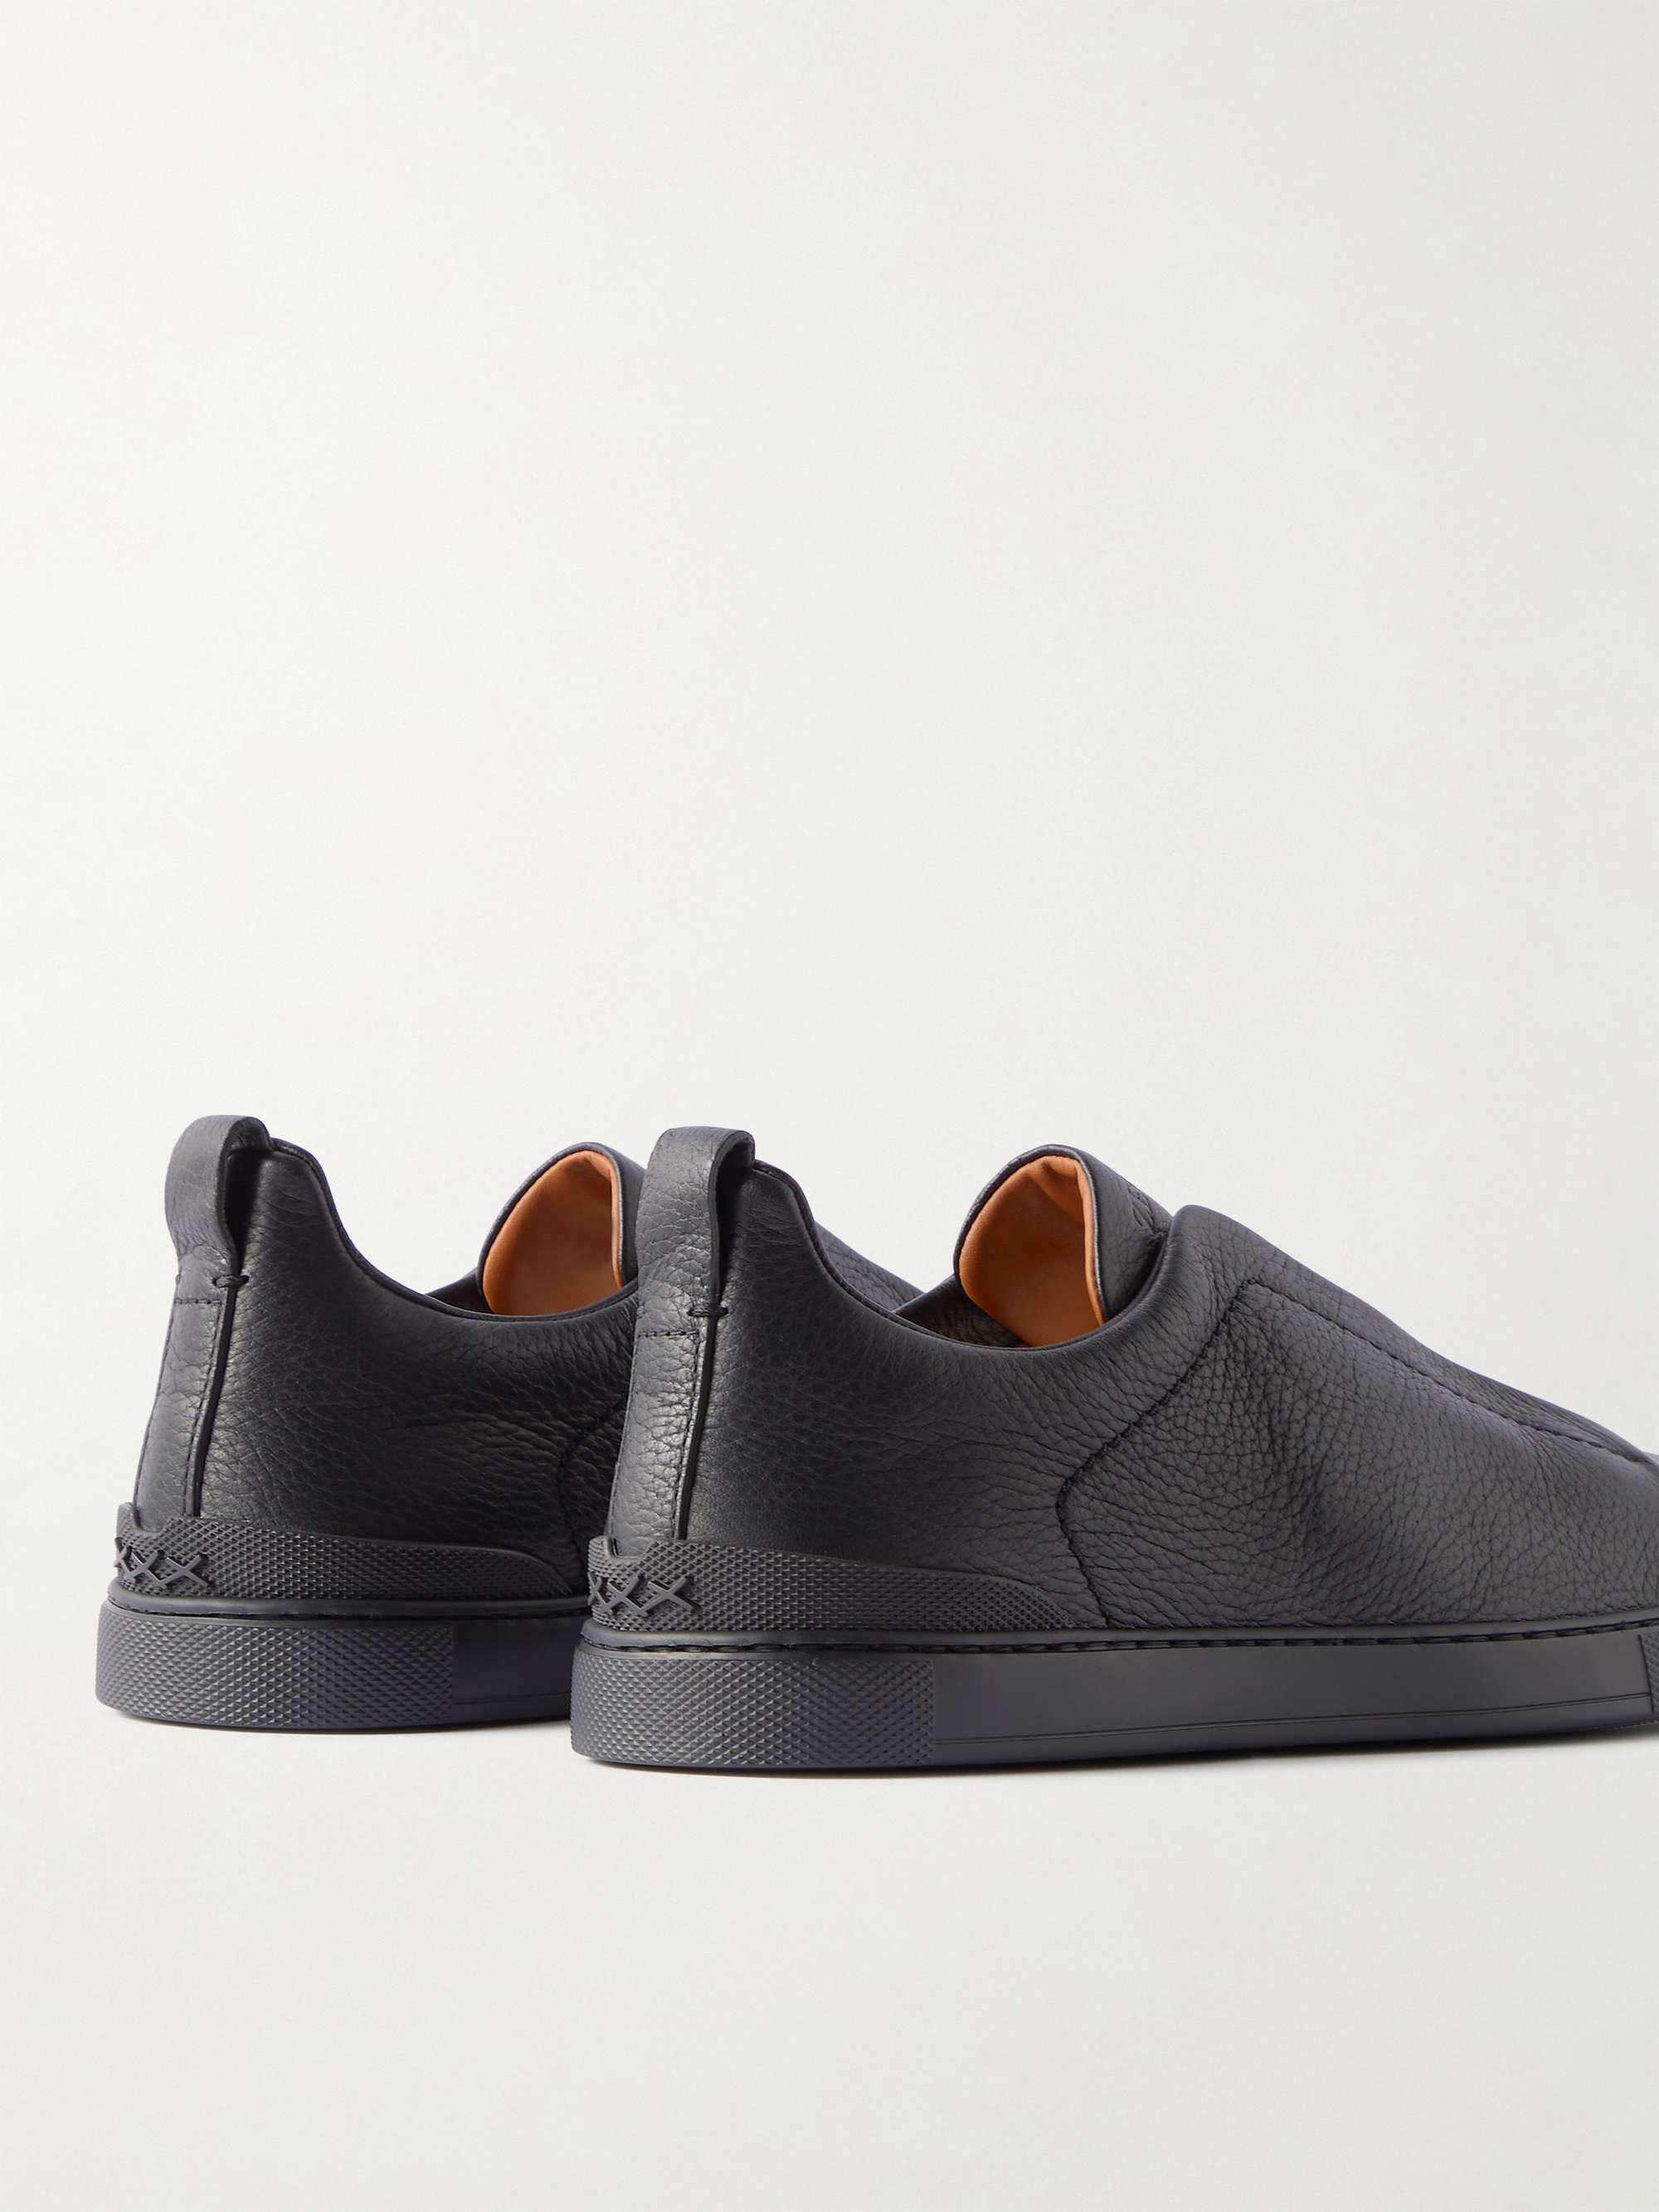 ZEGNA Full-Grain Leather Slip-On Sneakers